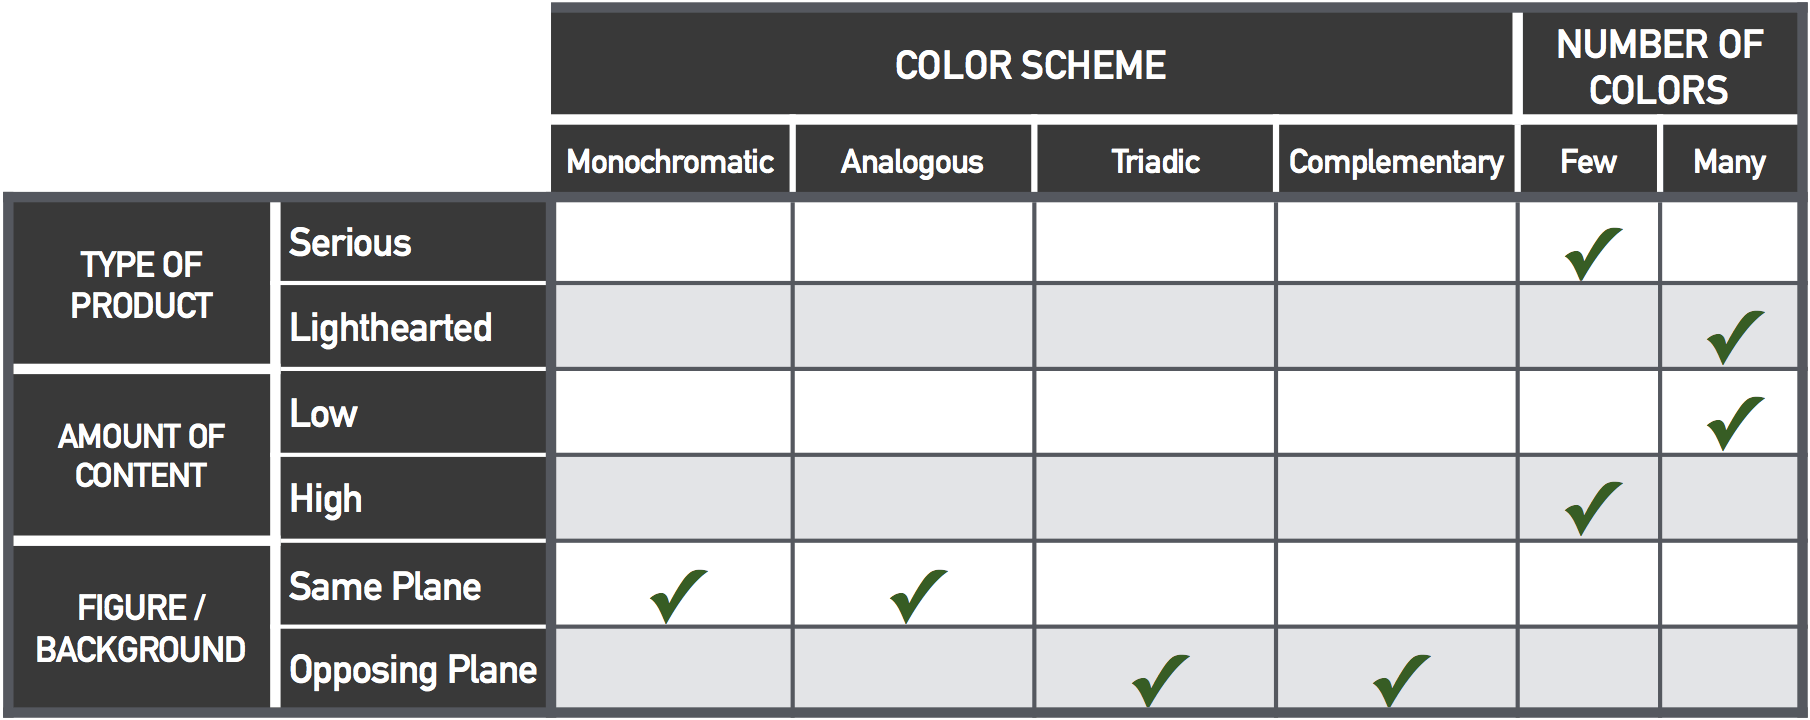 color-scheme-table